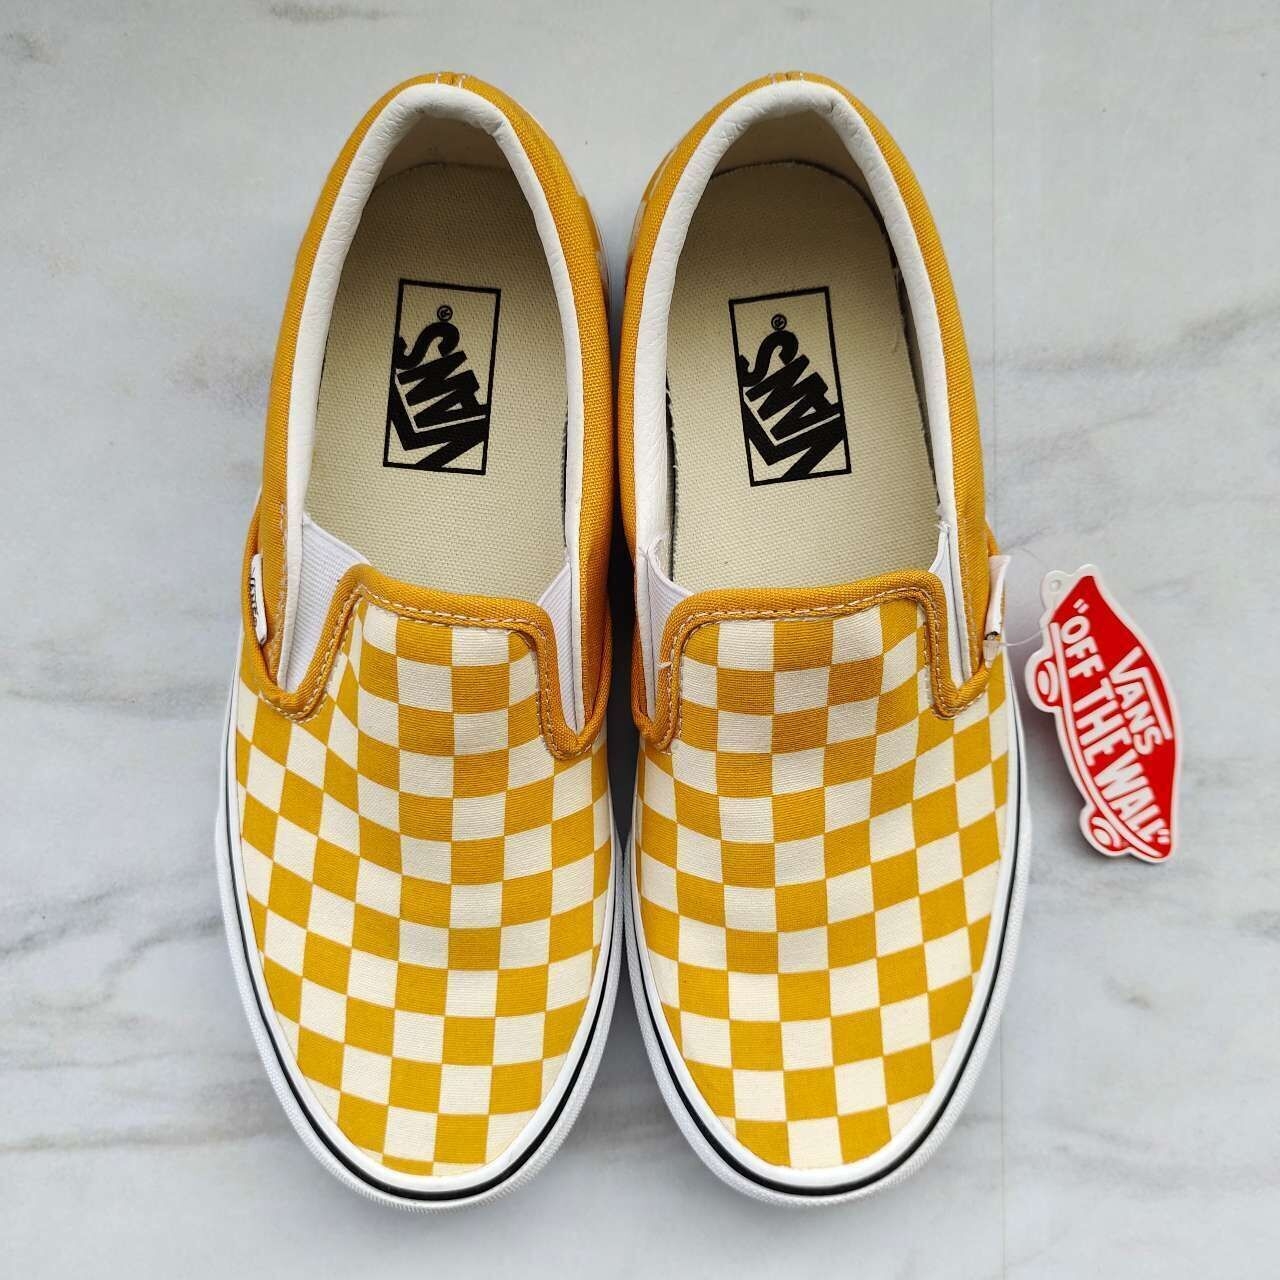 Vans Checkerboard Slip On Golden Yellow